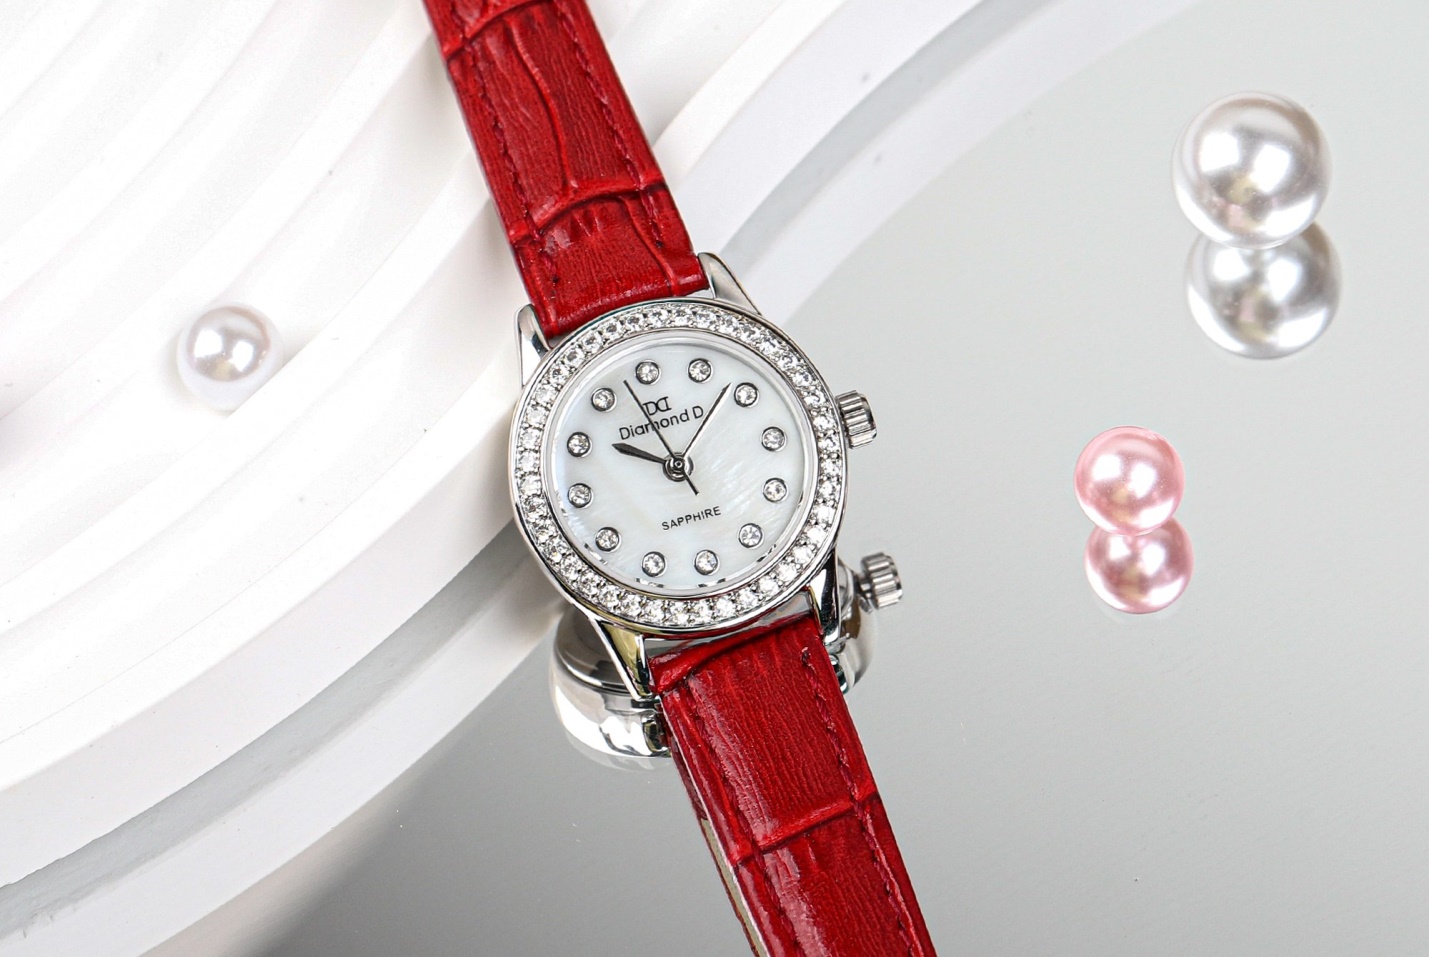 Đồng hồ DM65105W-R với thiết kế dây da trẻ trung và mặt đồng hồ có gắn kim cương nhân tạo. Điều đặc biệt là mặt đồng hồ còn được thiết kế khảm trai càng tăng thêm sự “đắt giá” cho sản phẩm. Sự kết hợp này tạo nên vẻ hài hòa hoàn hảo và thu hút mọi ánh nhìn